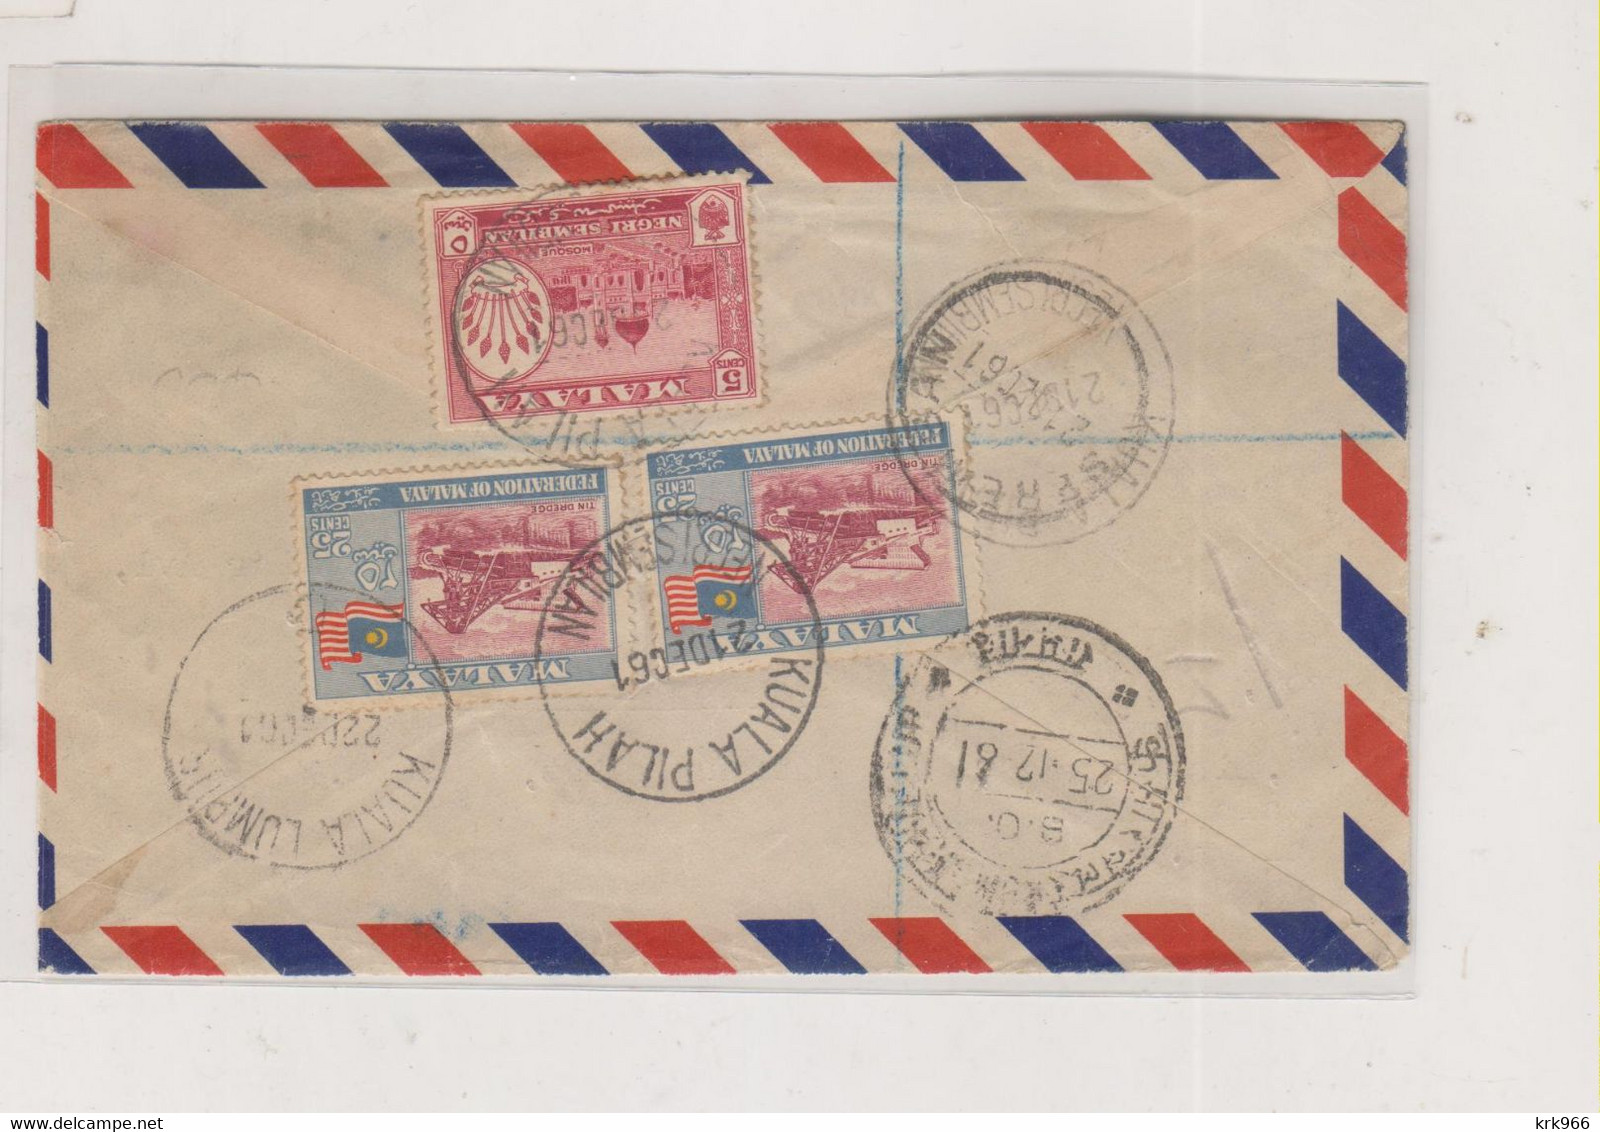 MALAYA KUALA PILAH  1961  Registered Airmail Cover - Fédération De Malaya